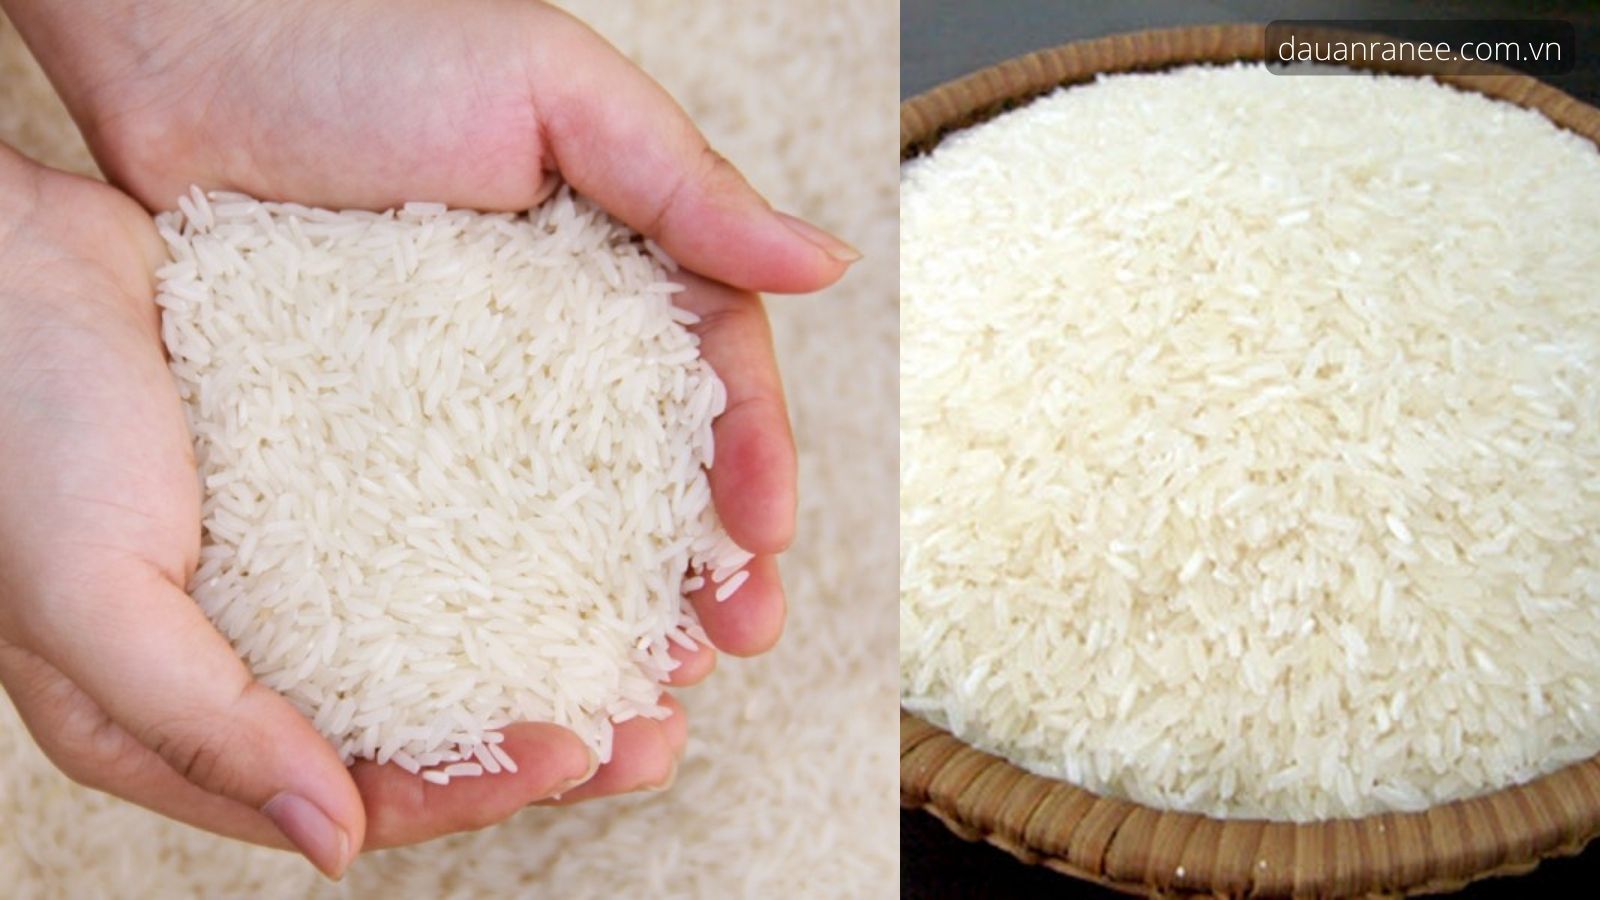 Đặc sản Nam Định – Gạo tám thơm